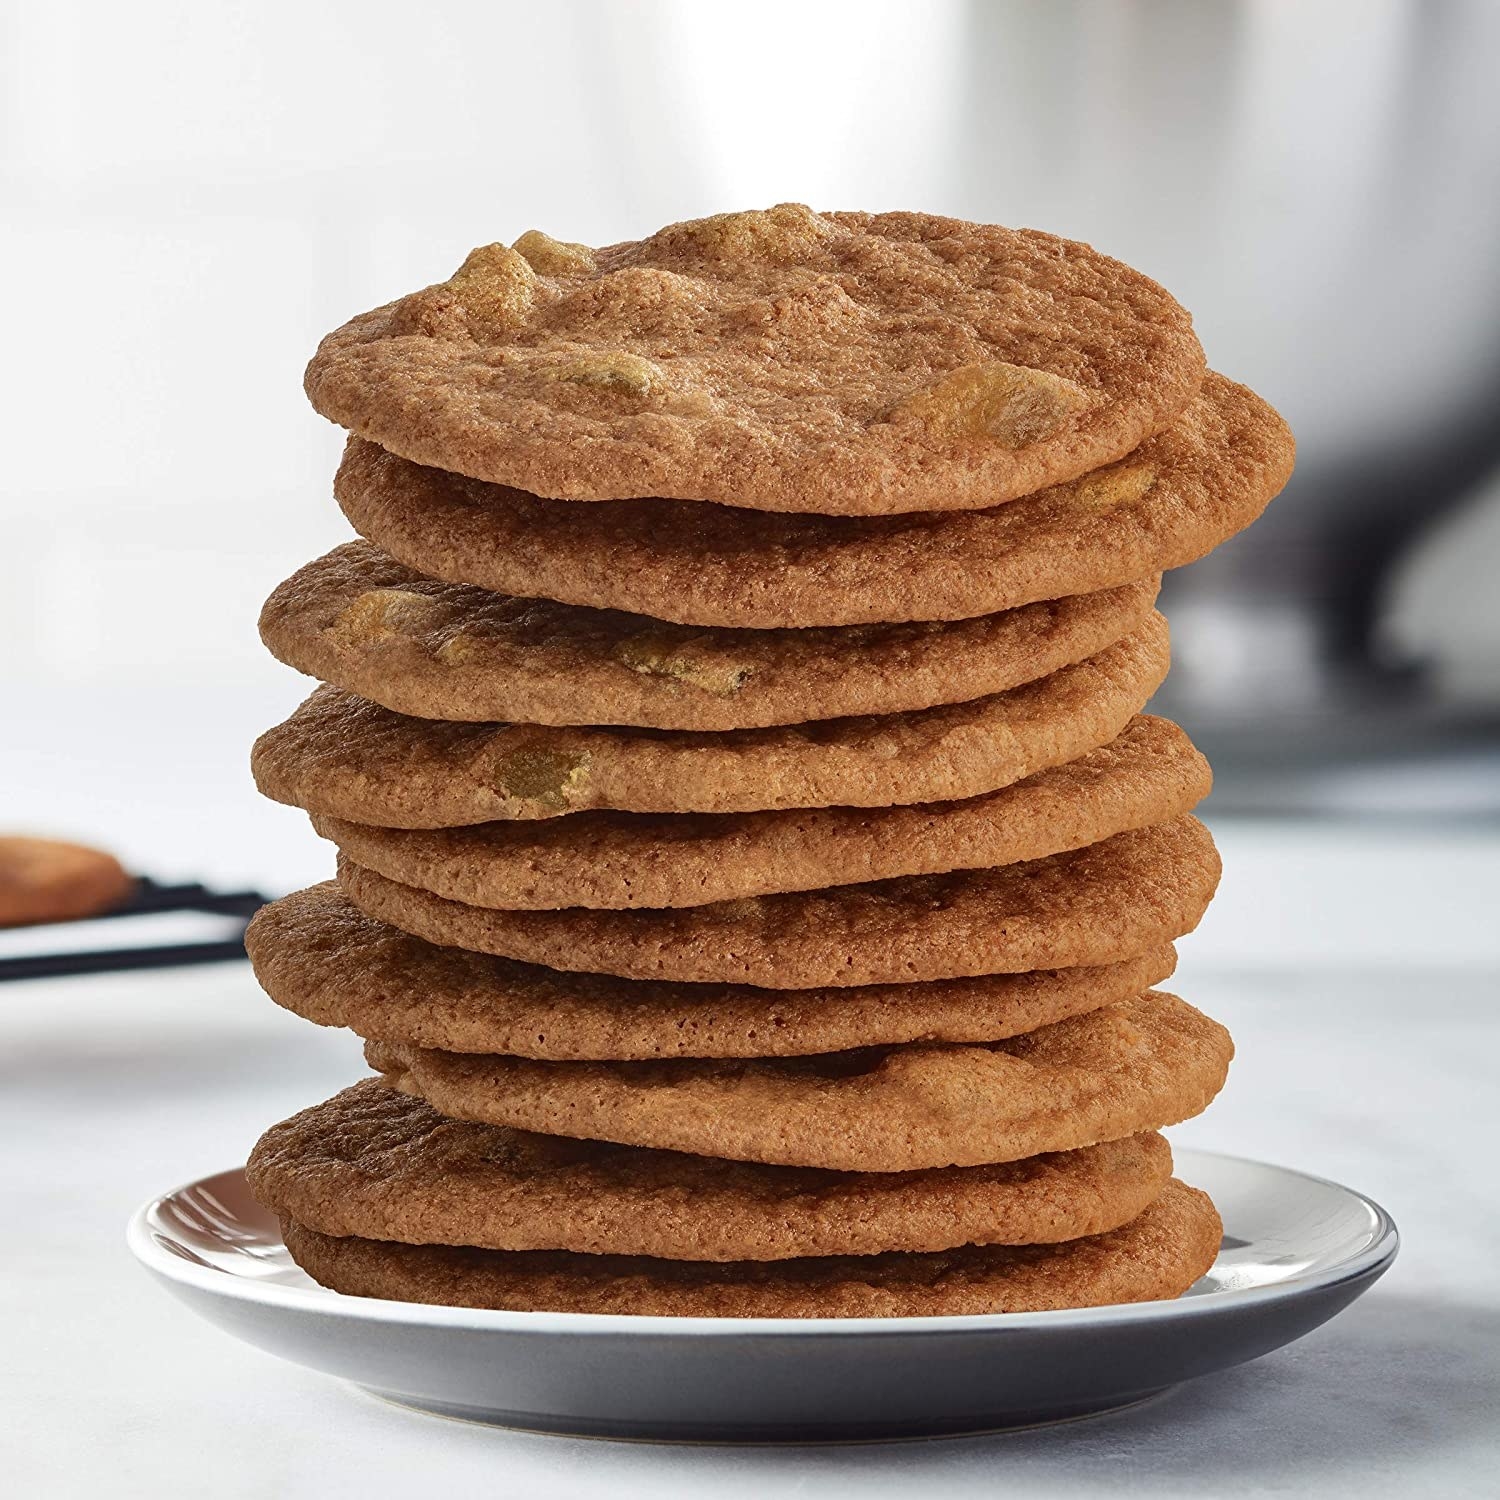 The crispy-looking cookies